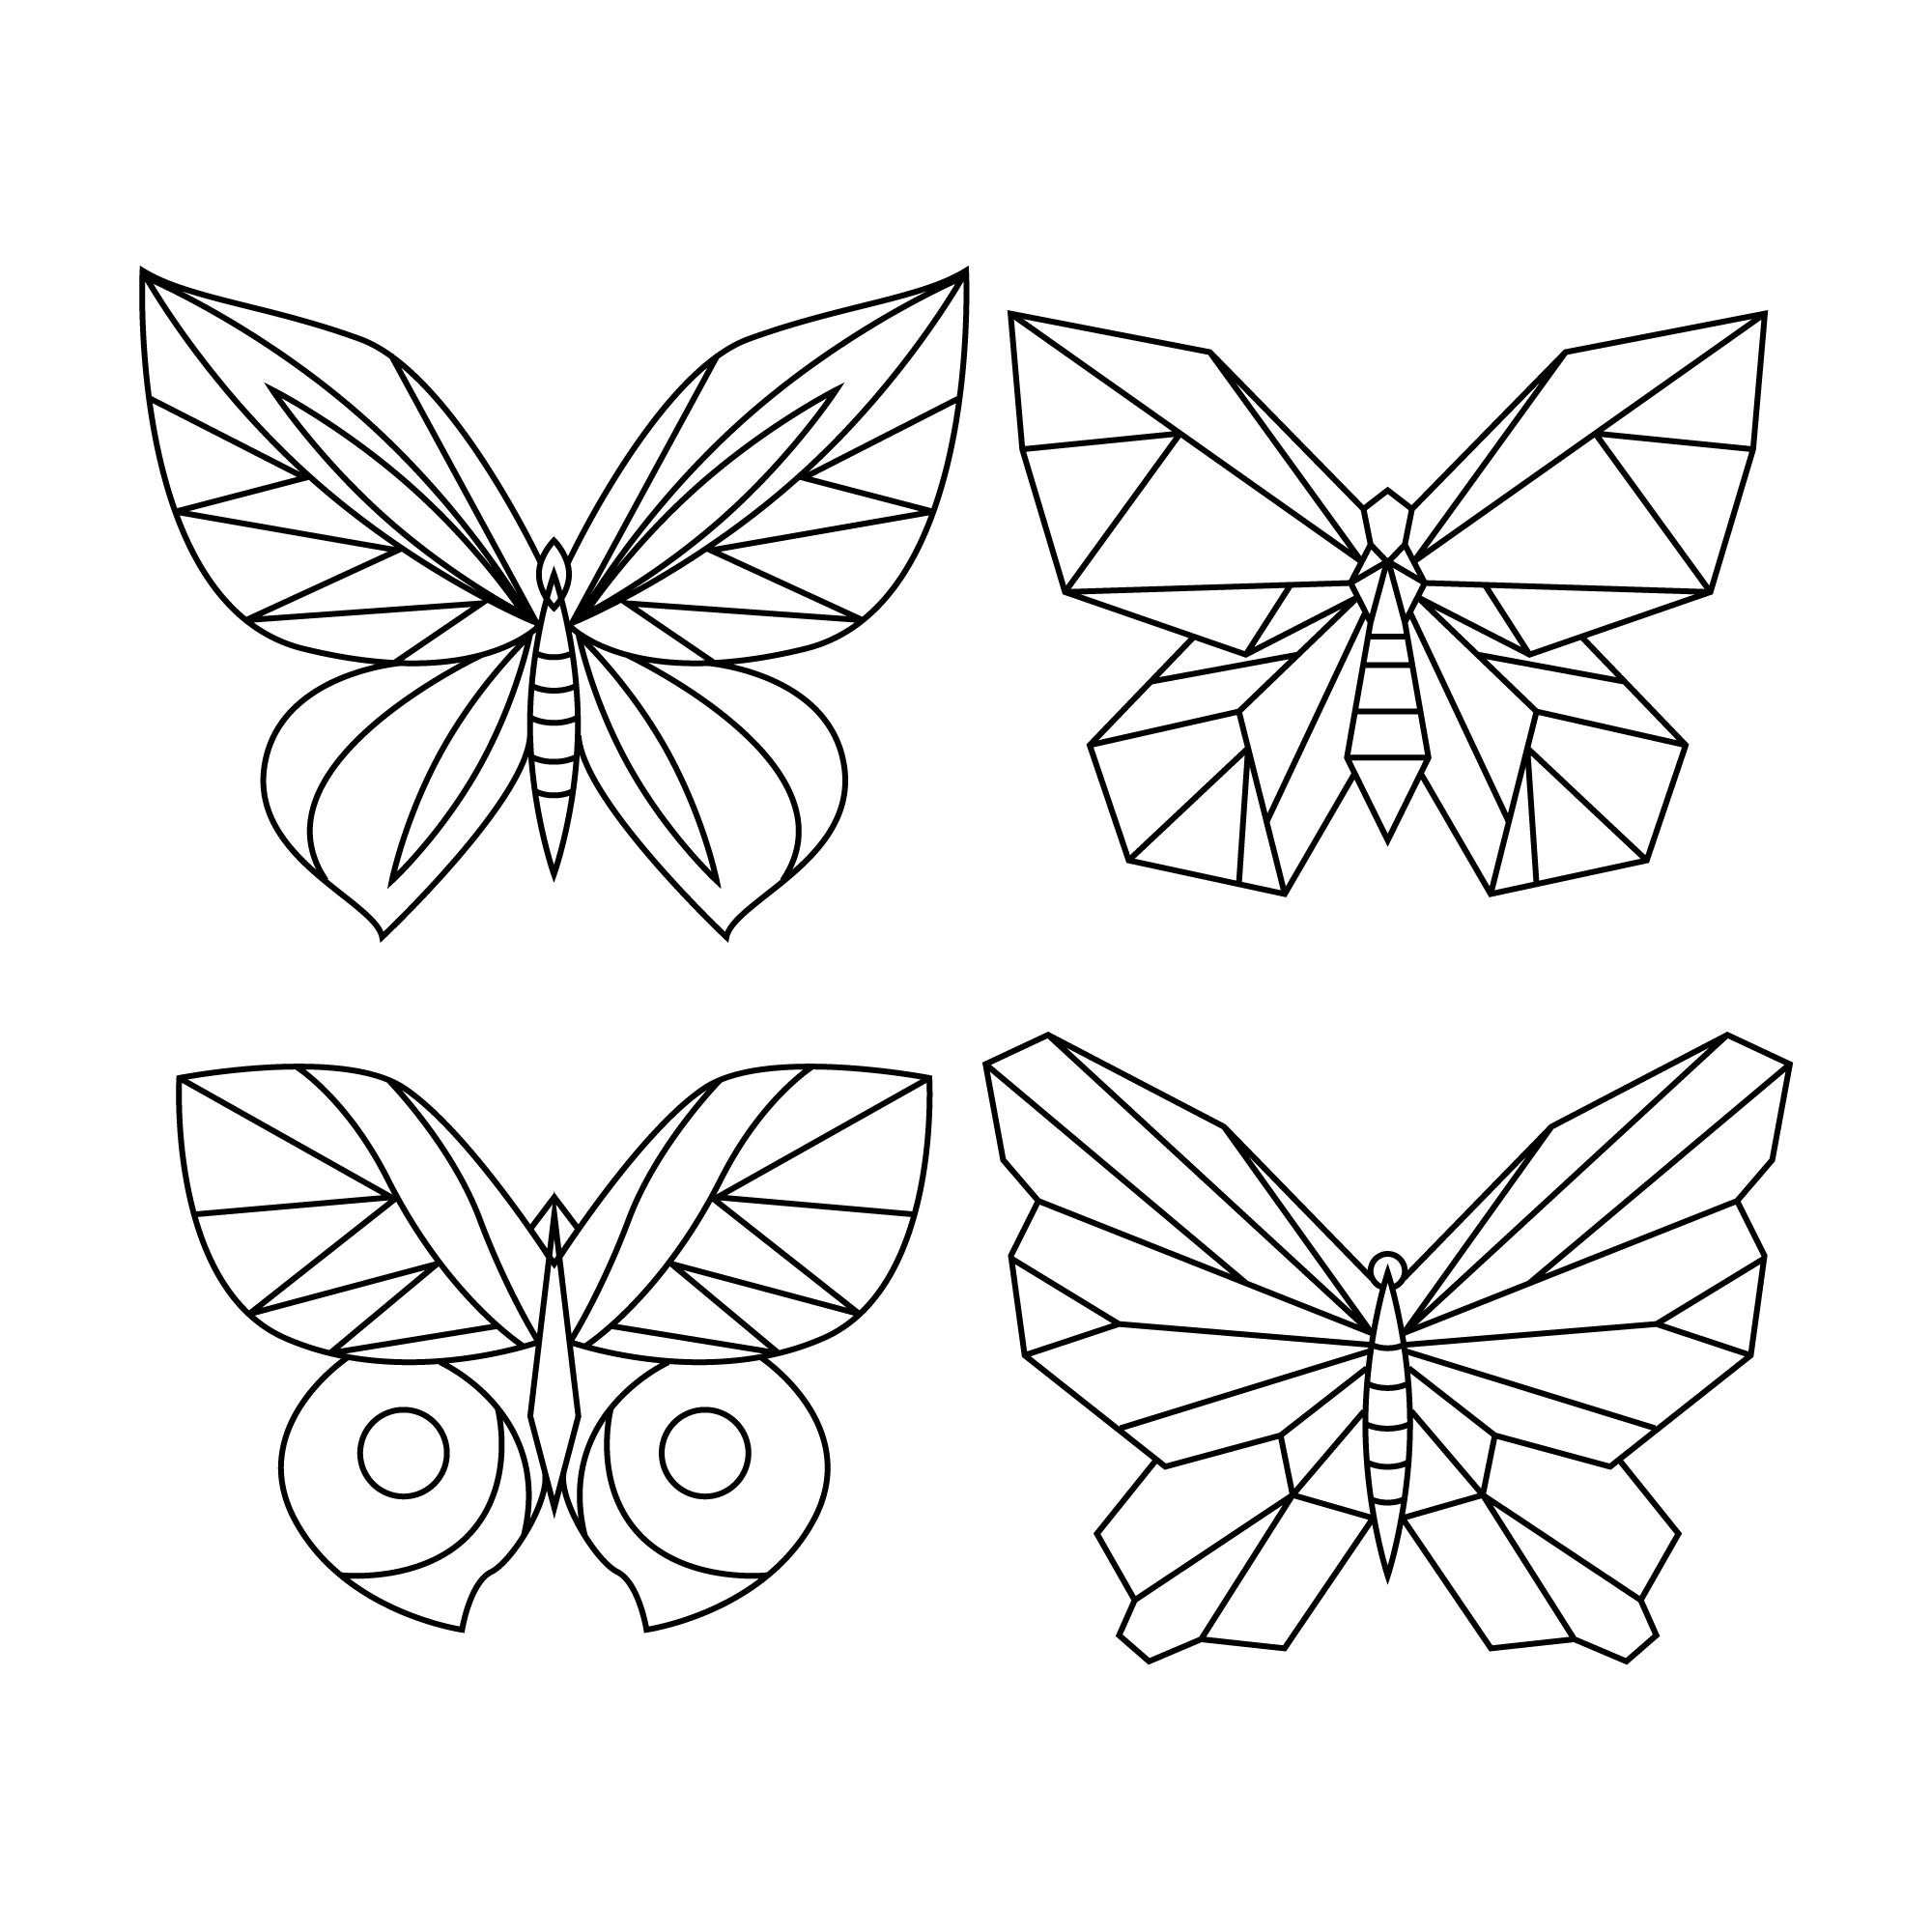 Раскраска для детей: набор из четырех бабочек